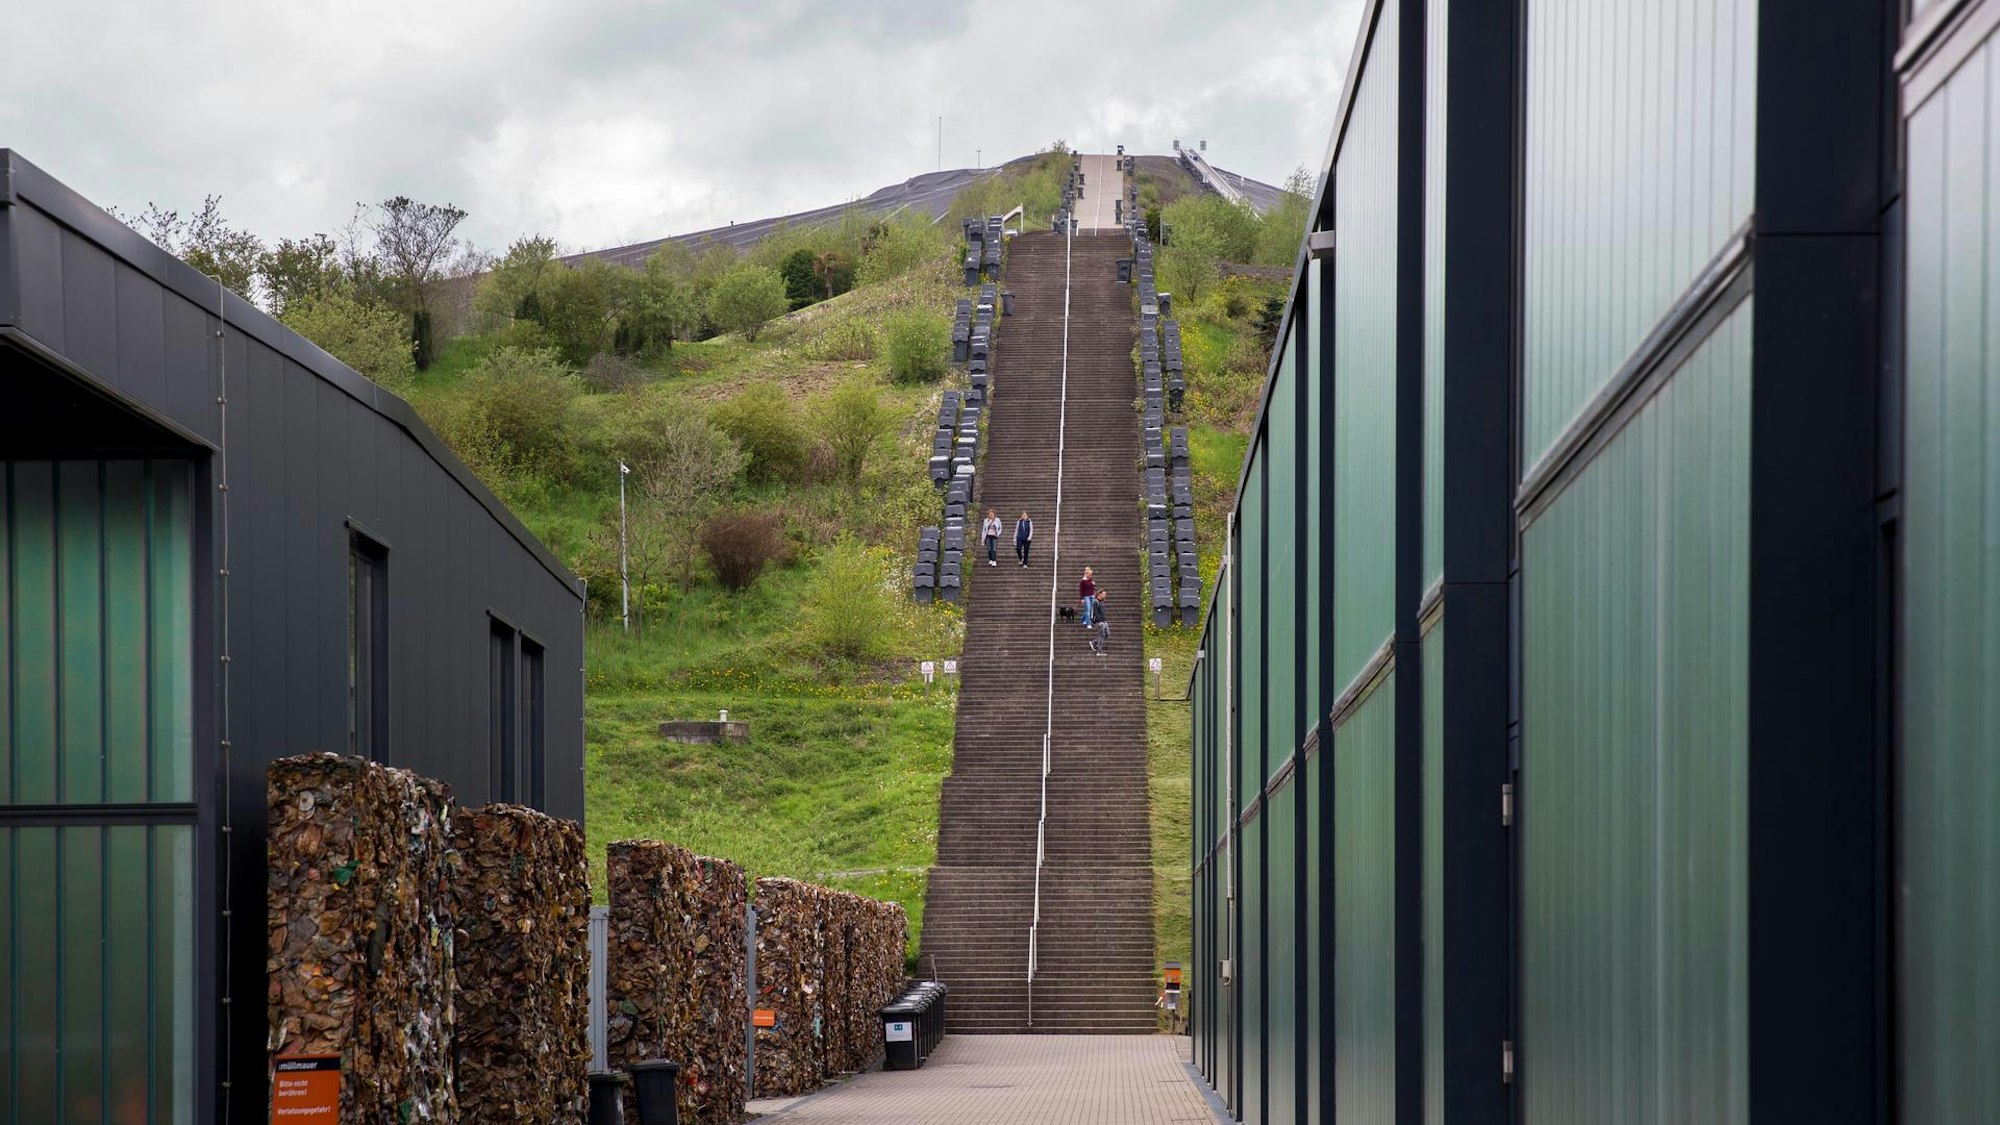 Blick zwischen zwei Gebäuden hindurch auf eine lange Treppe, die einen Berg hinaufführt